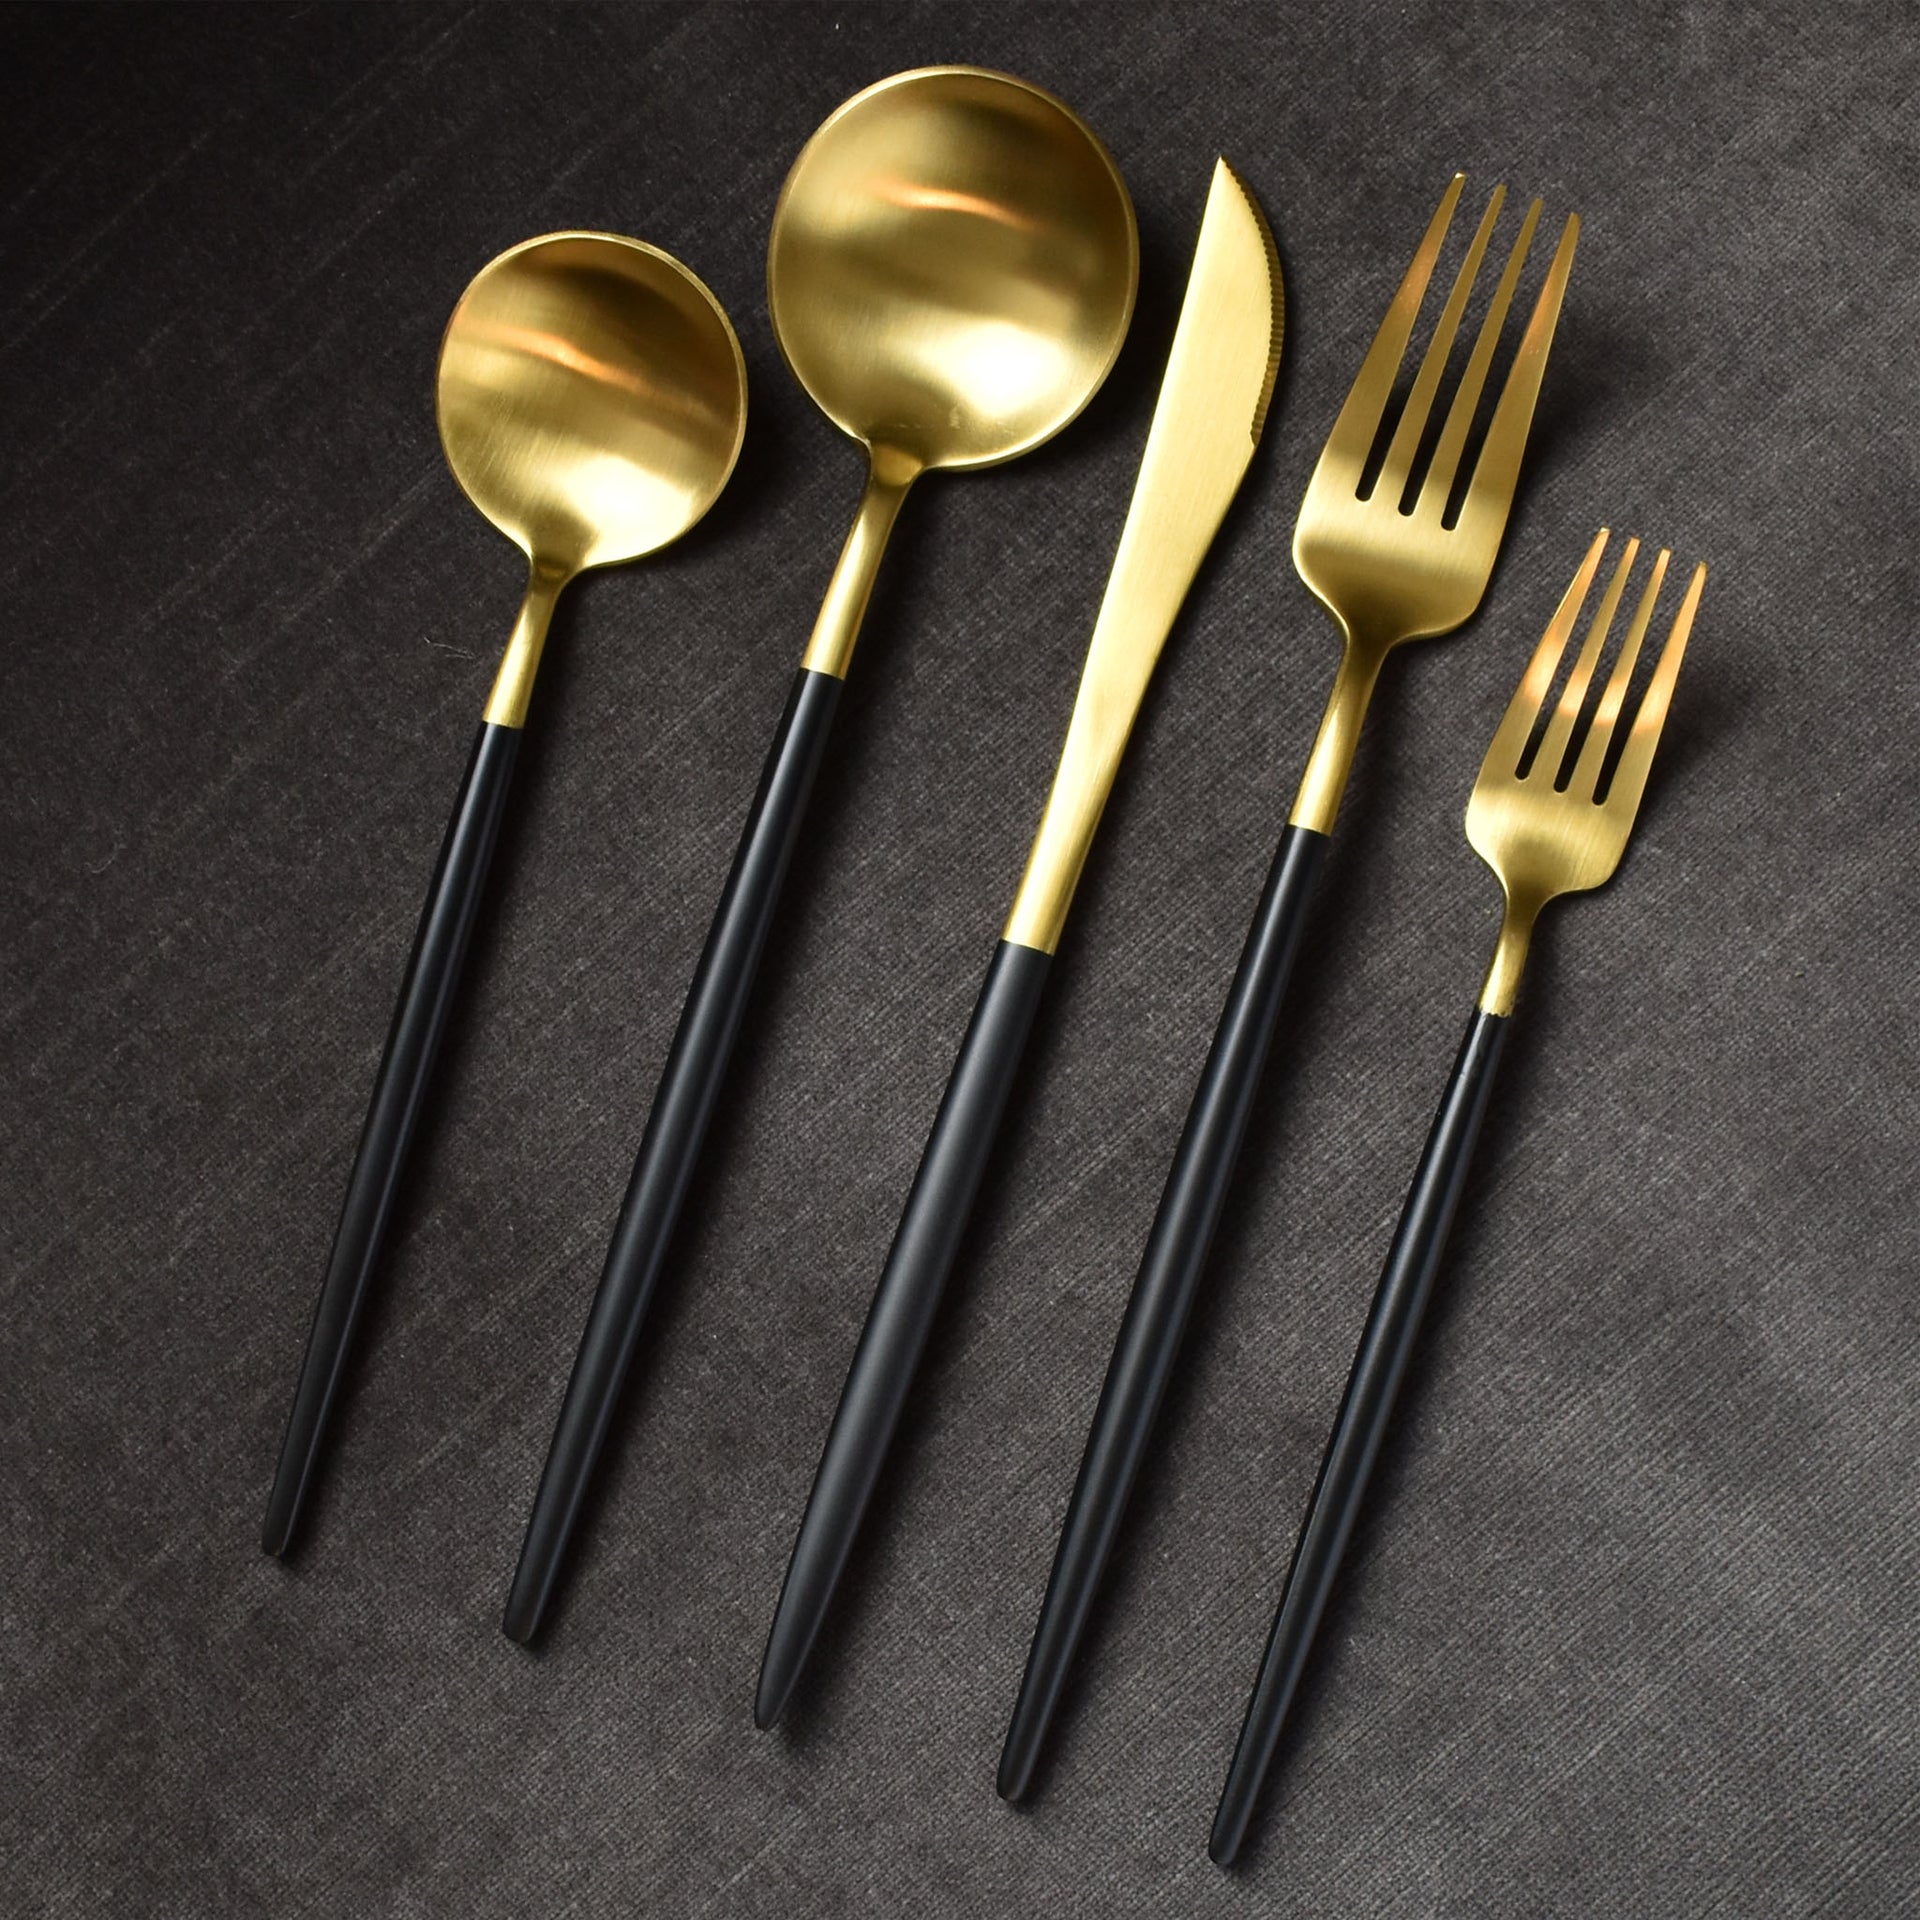 https://parkergibbs.com/cdn/shop/products/blackshear-matte-brushed-gold-black-long-handle-contemporary-flatware-cutlery-set.jpg?v=1599000096&width=1920